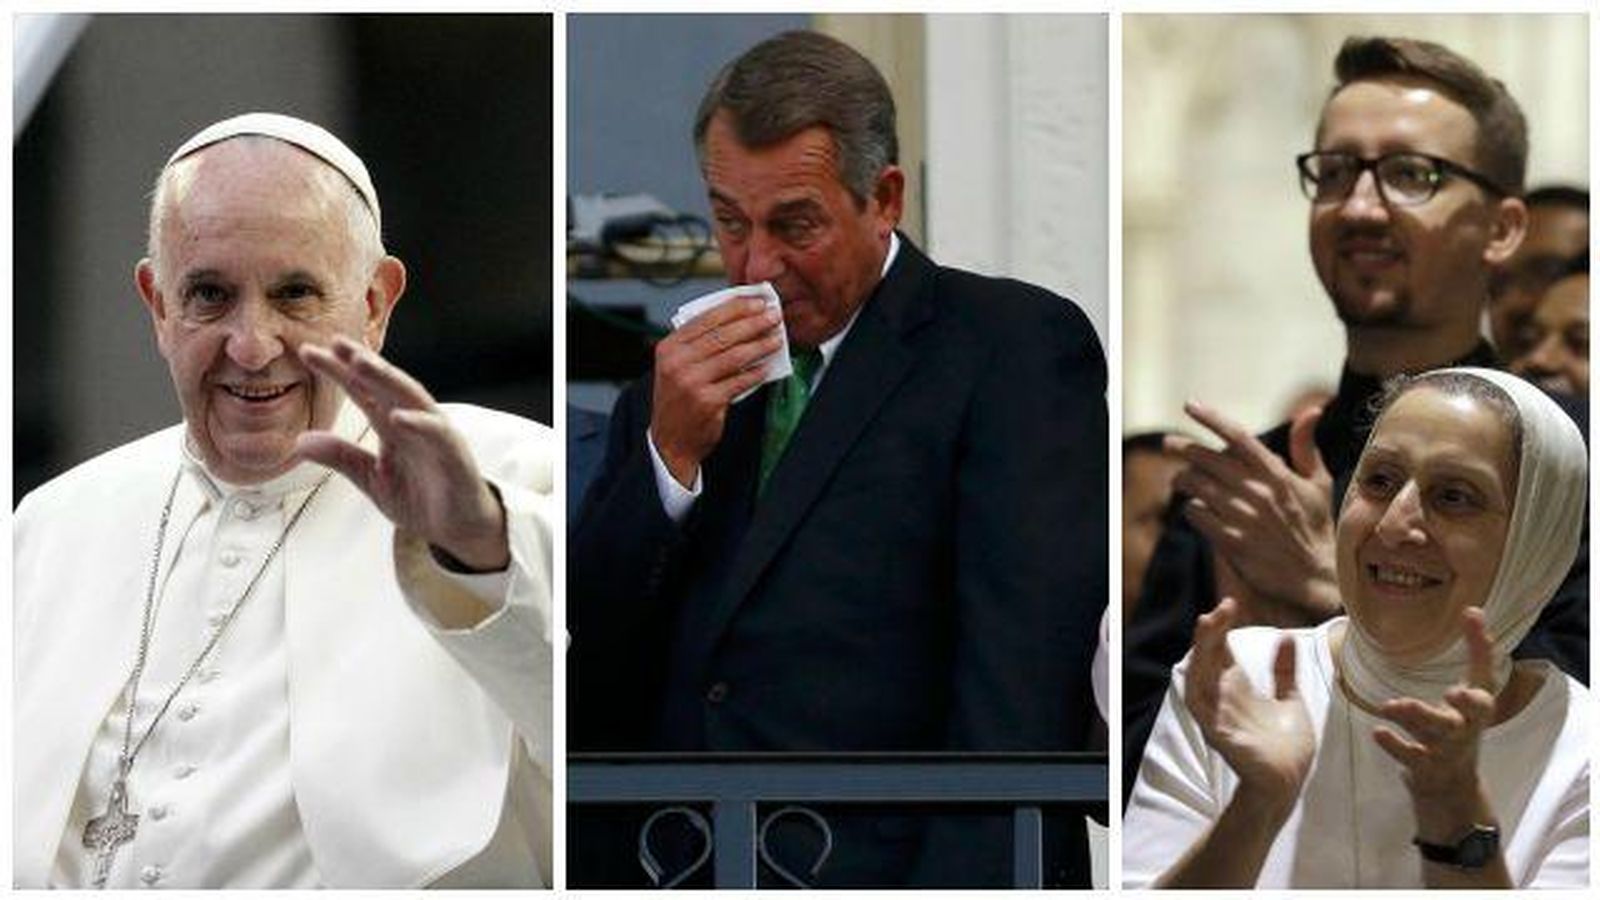 Foto: El discurso del Papa provocó reacciones de lo más variadas (EC/Agencias)